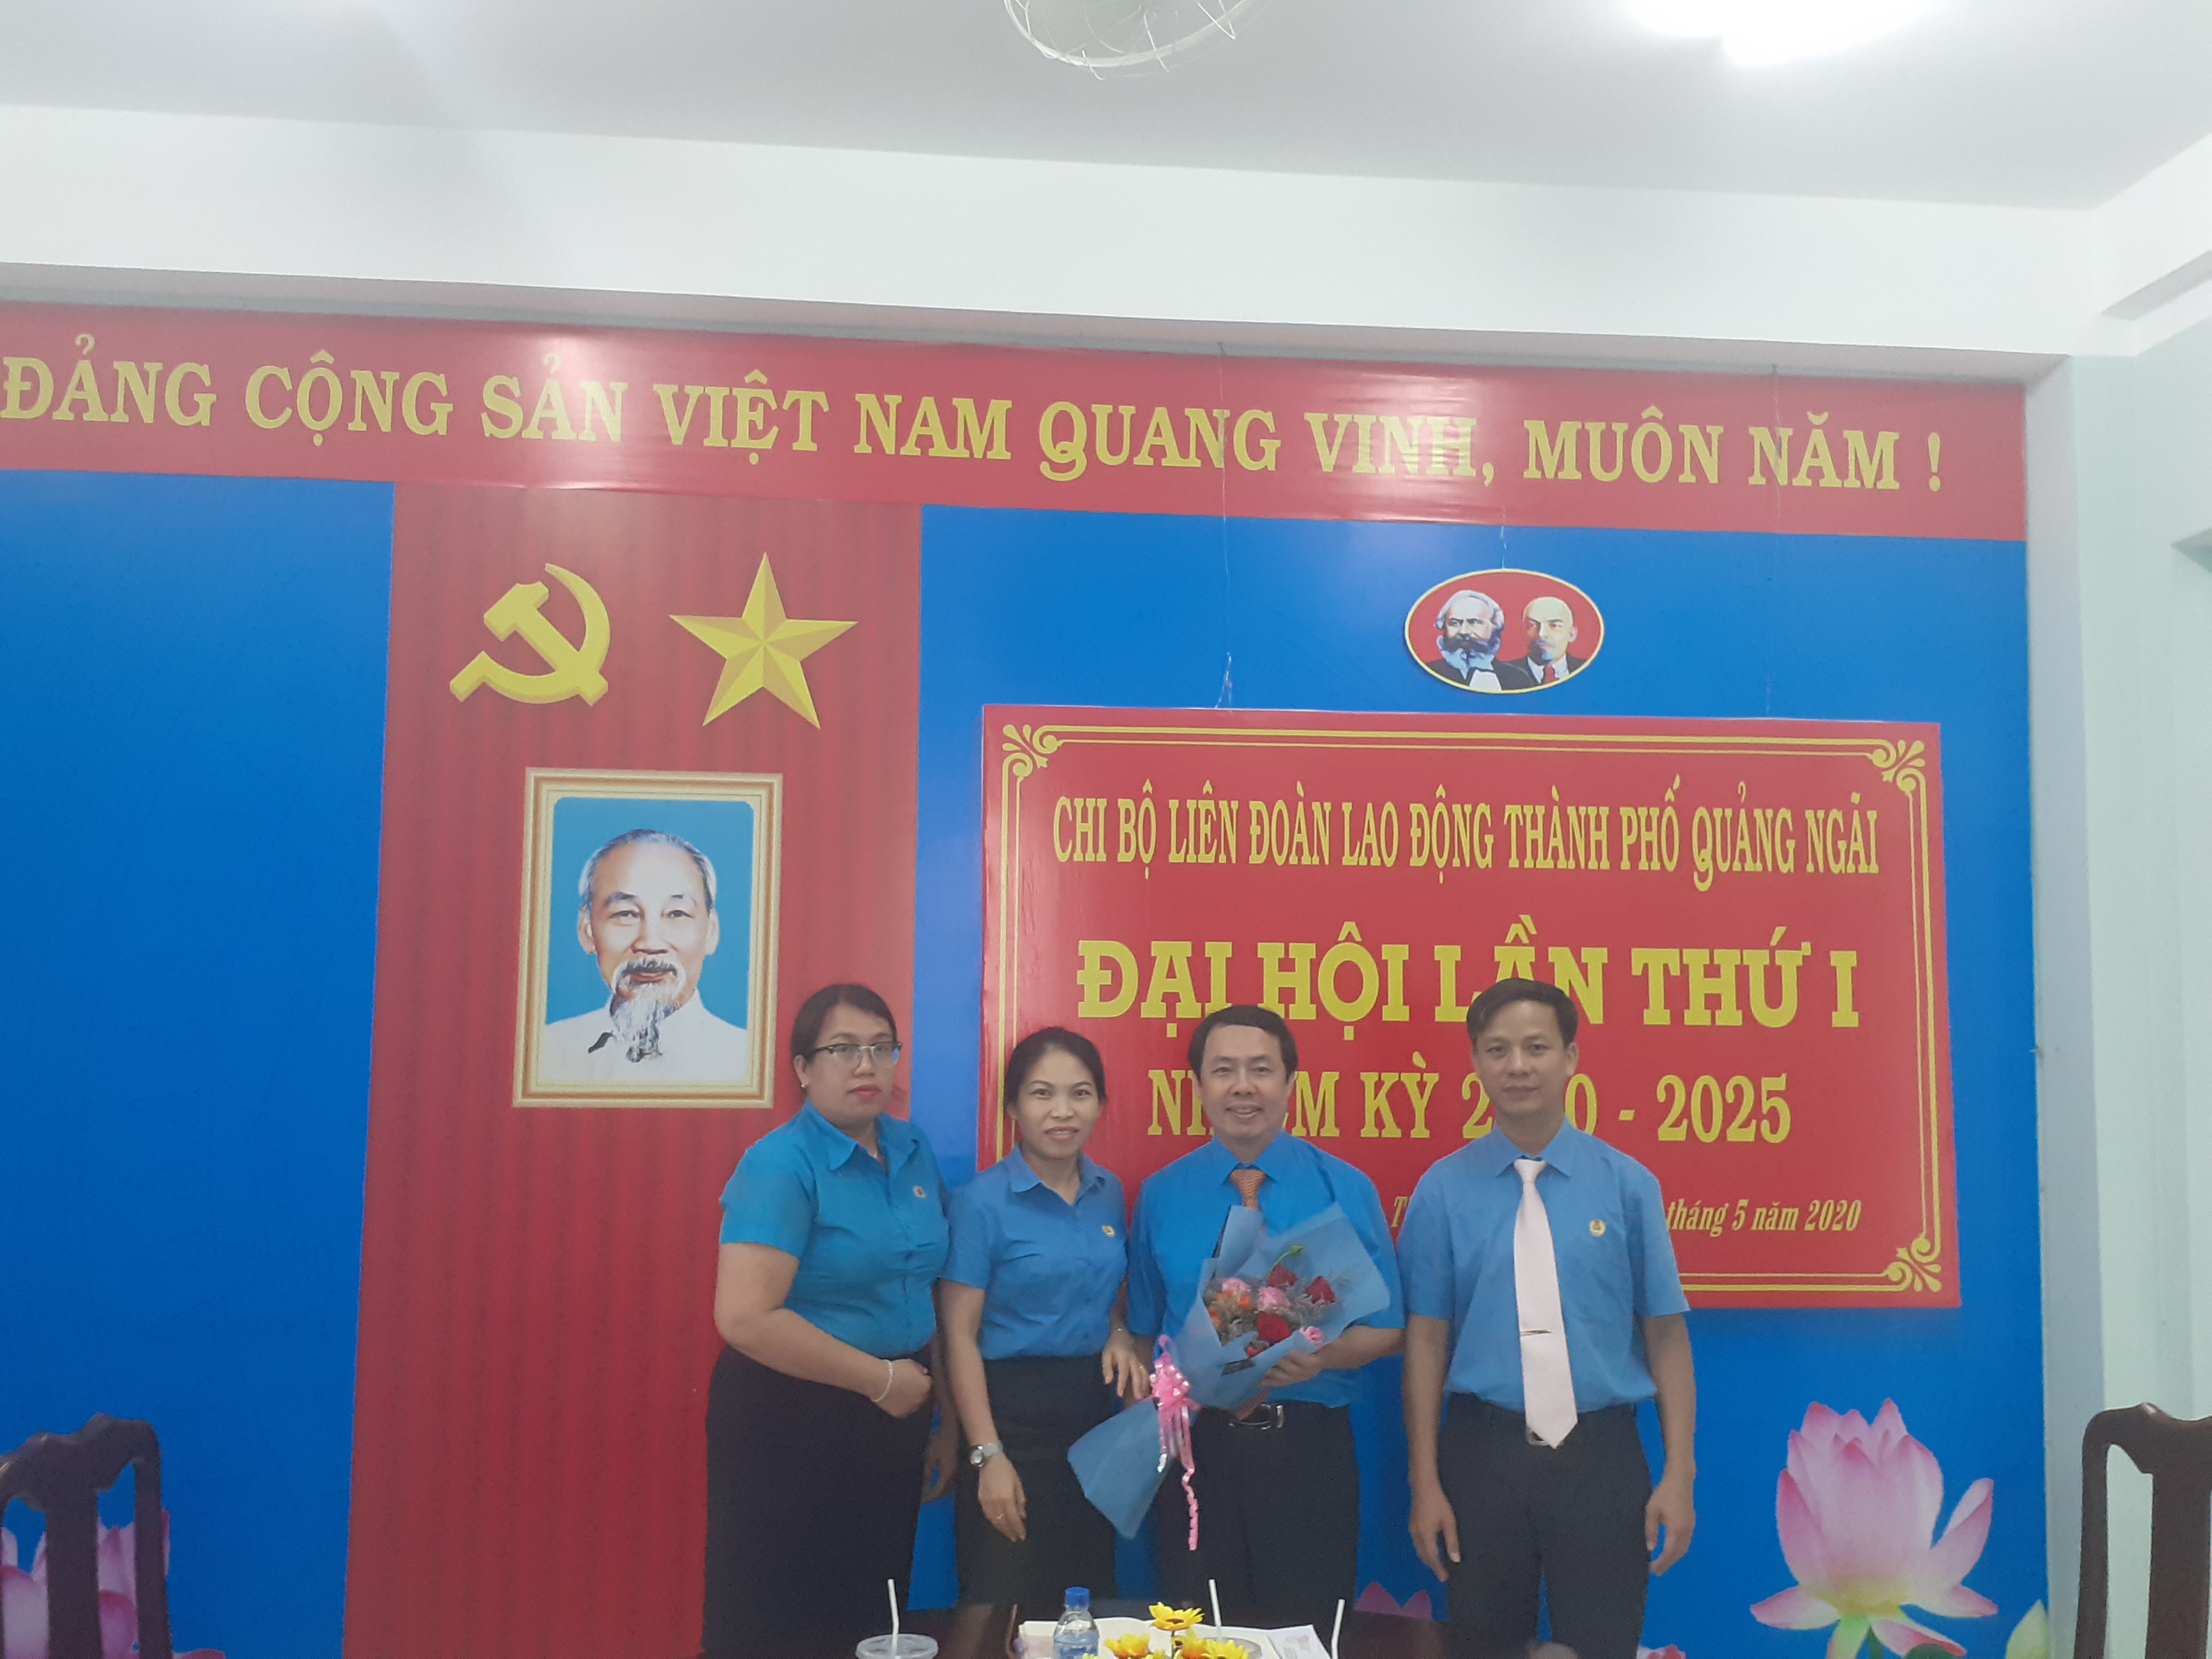 Đại hội Chi bộ Liên đoàn Lao động thành phố Quảng Ngãi lần thứ I đã thành công tốt đẹp